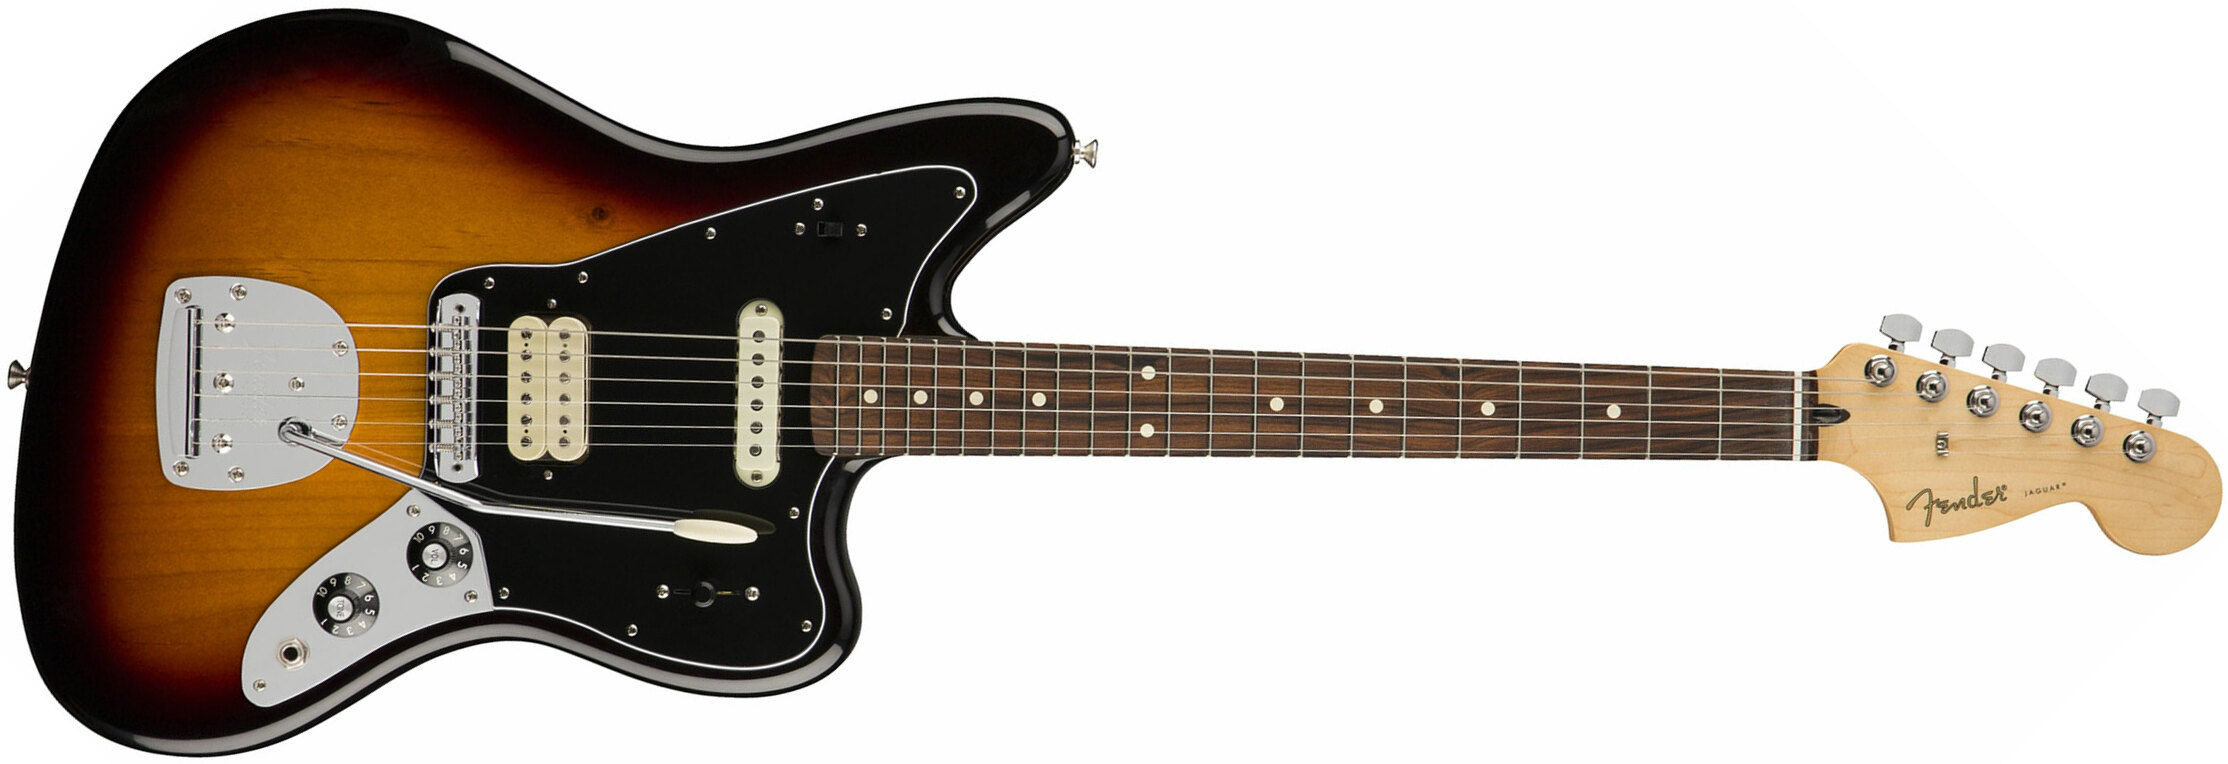 Fender Jaguar Player Mex Hs Pf - 3-color Sunburst - Retro-rock elektrische gitaar - Main picture